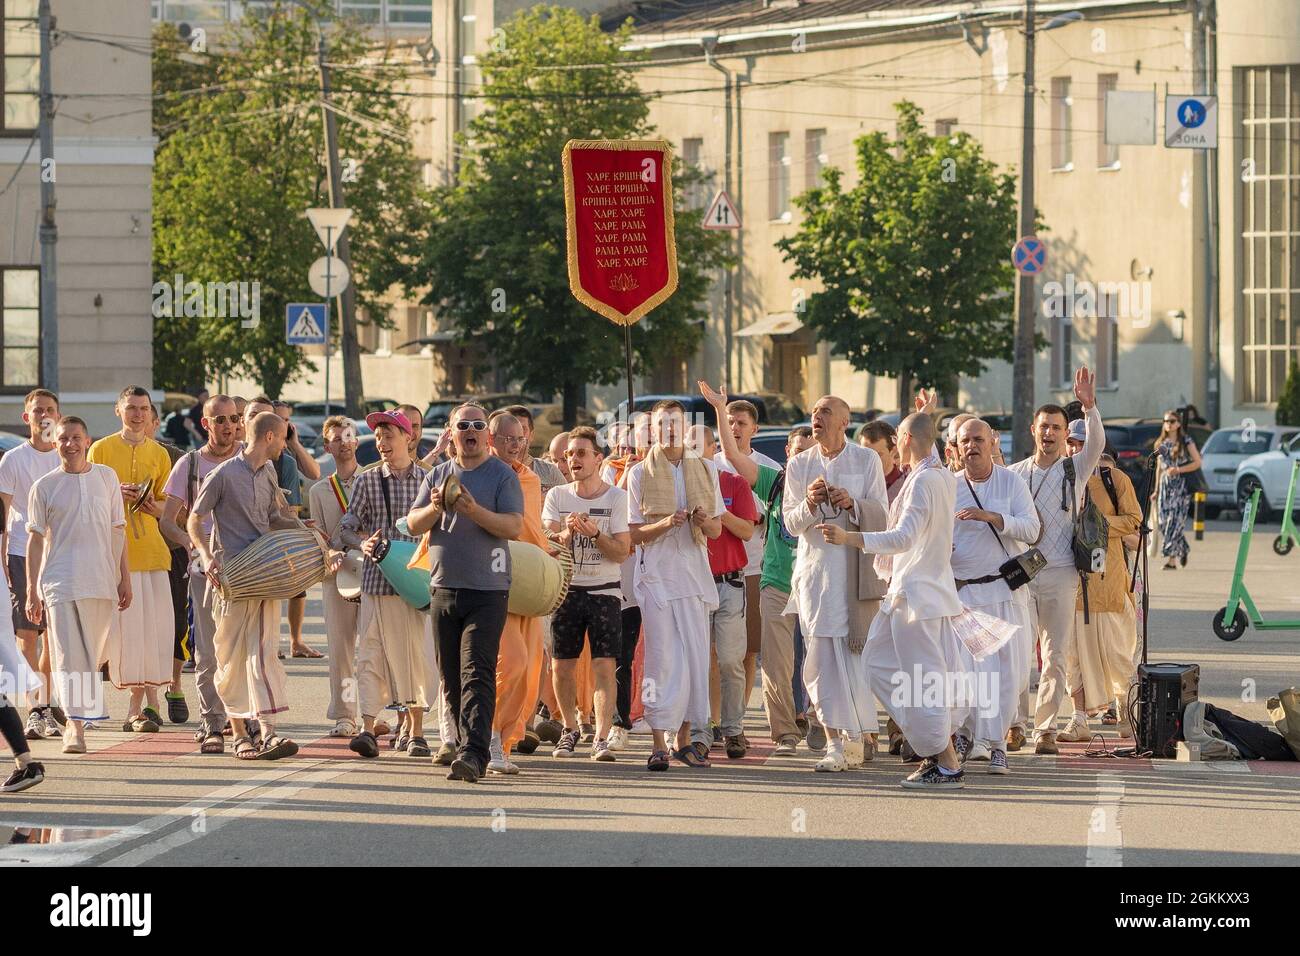 Hare Krishna-Anhänger gehen auf der Straße, singen und tanzen in Kiew, Ukraine. Stockfoto